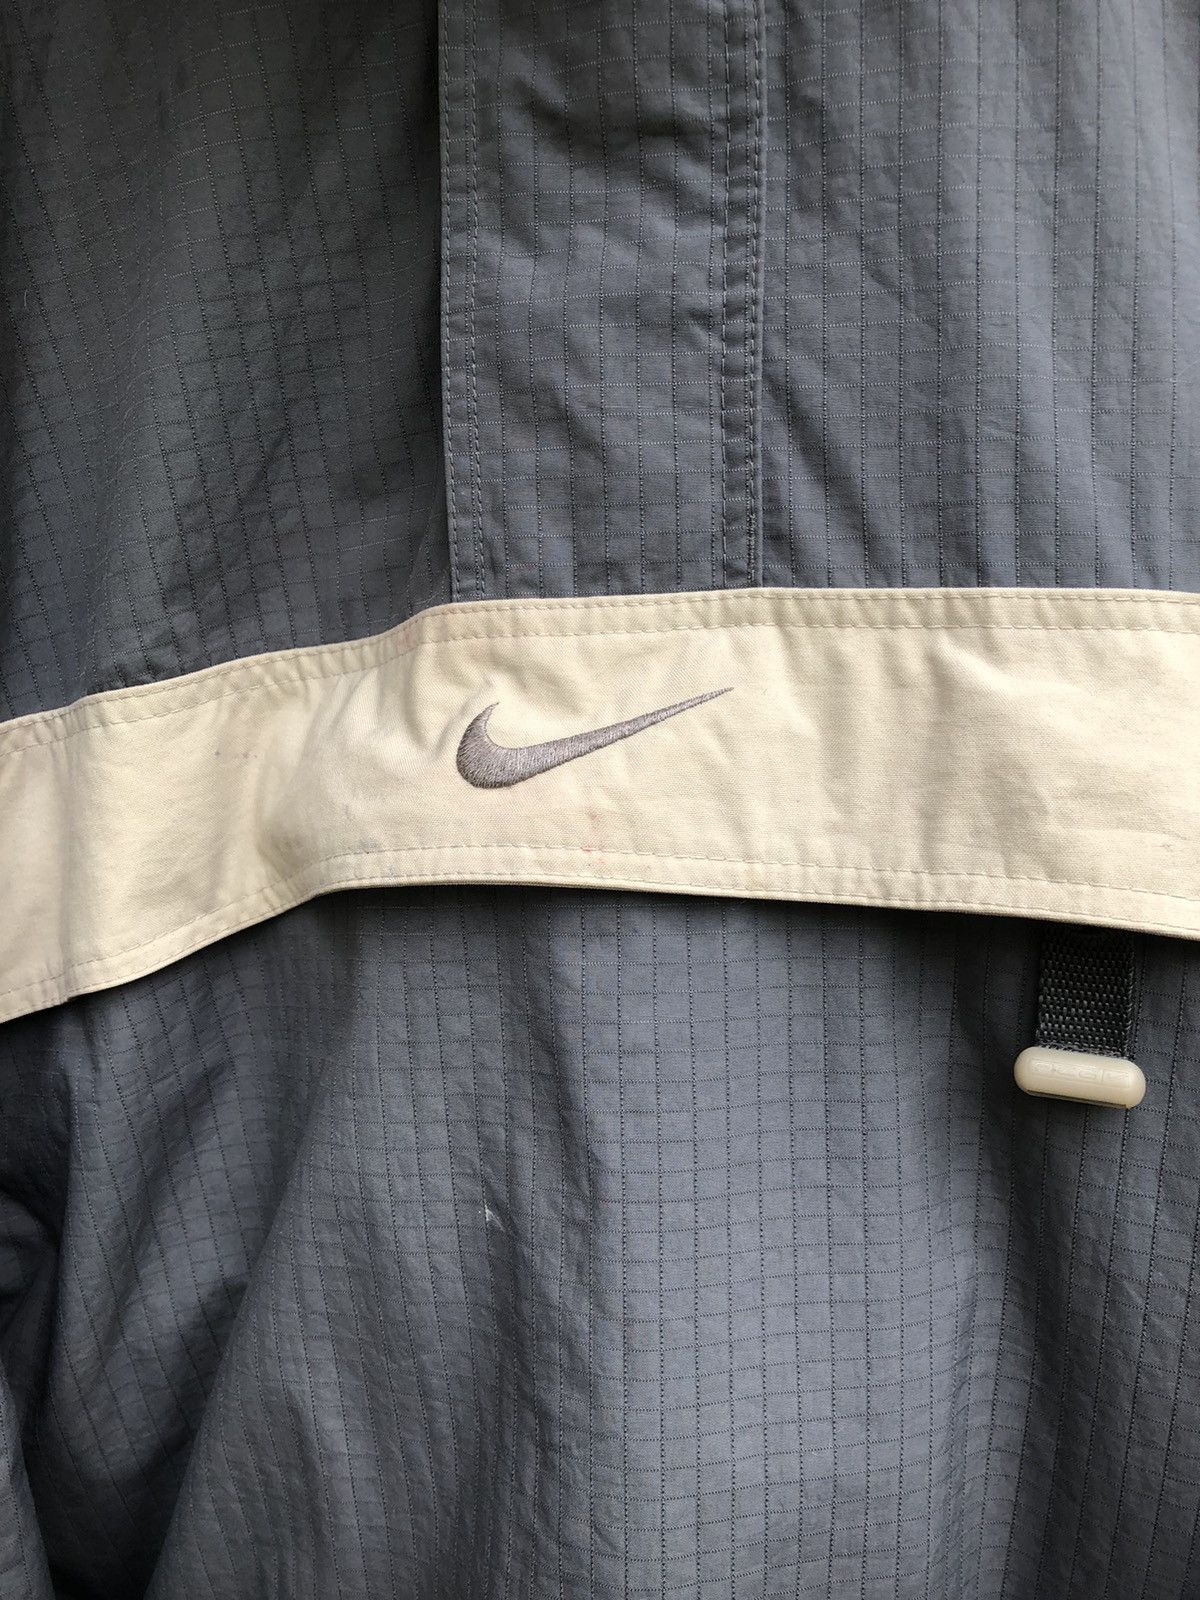 Oversized Vintage Nike ACG Anorak Pocket 3Outer Layer Jacket - 7